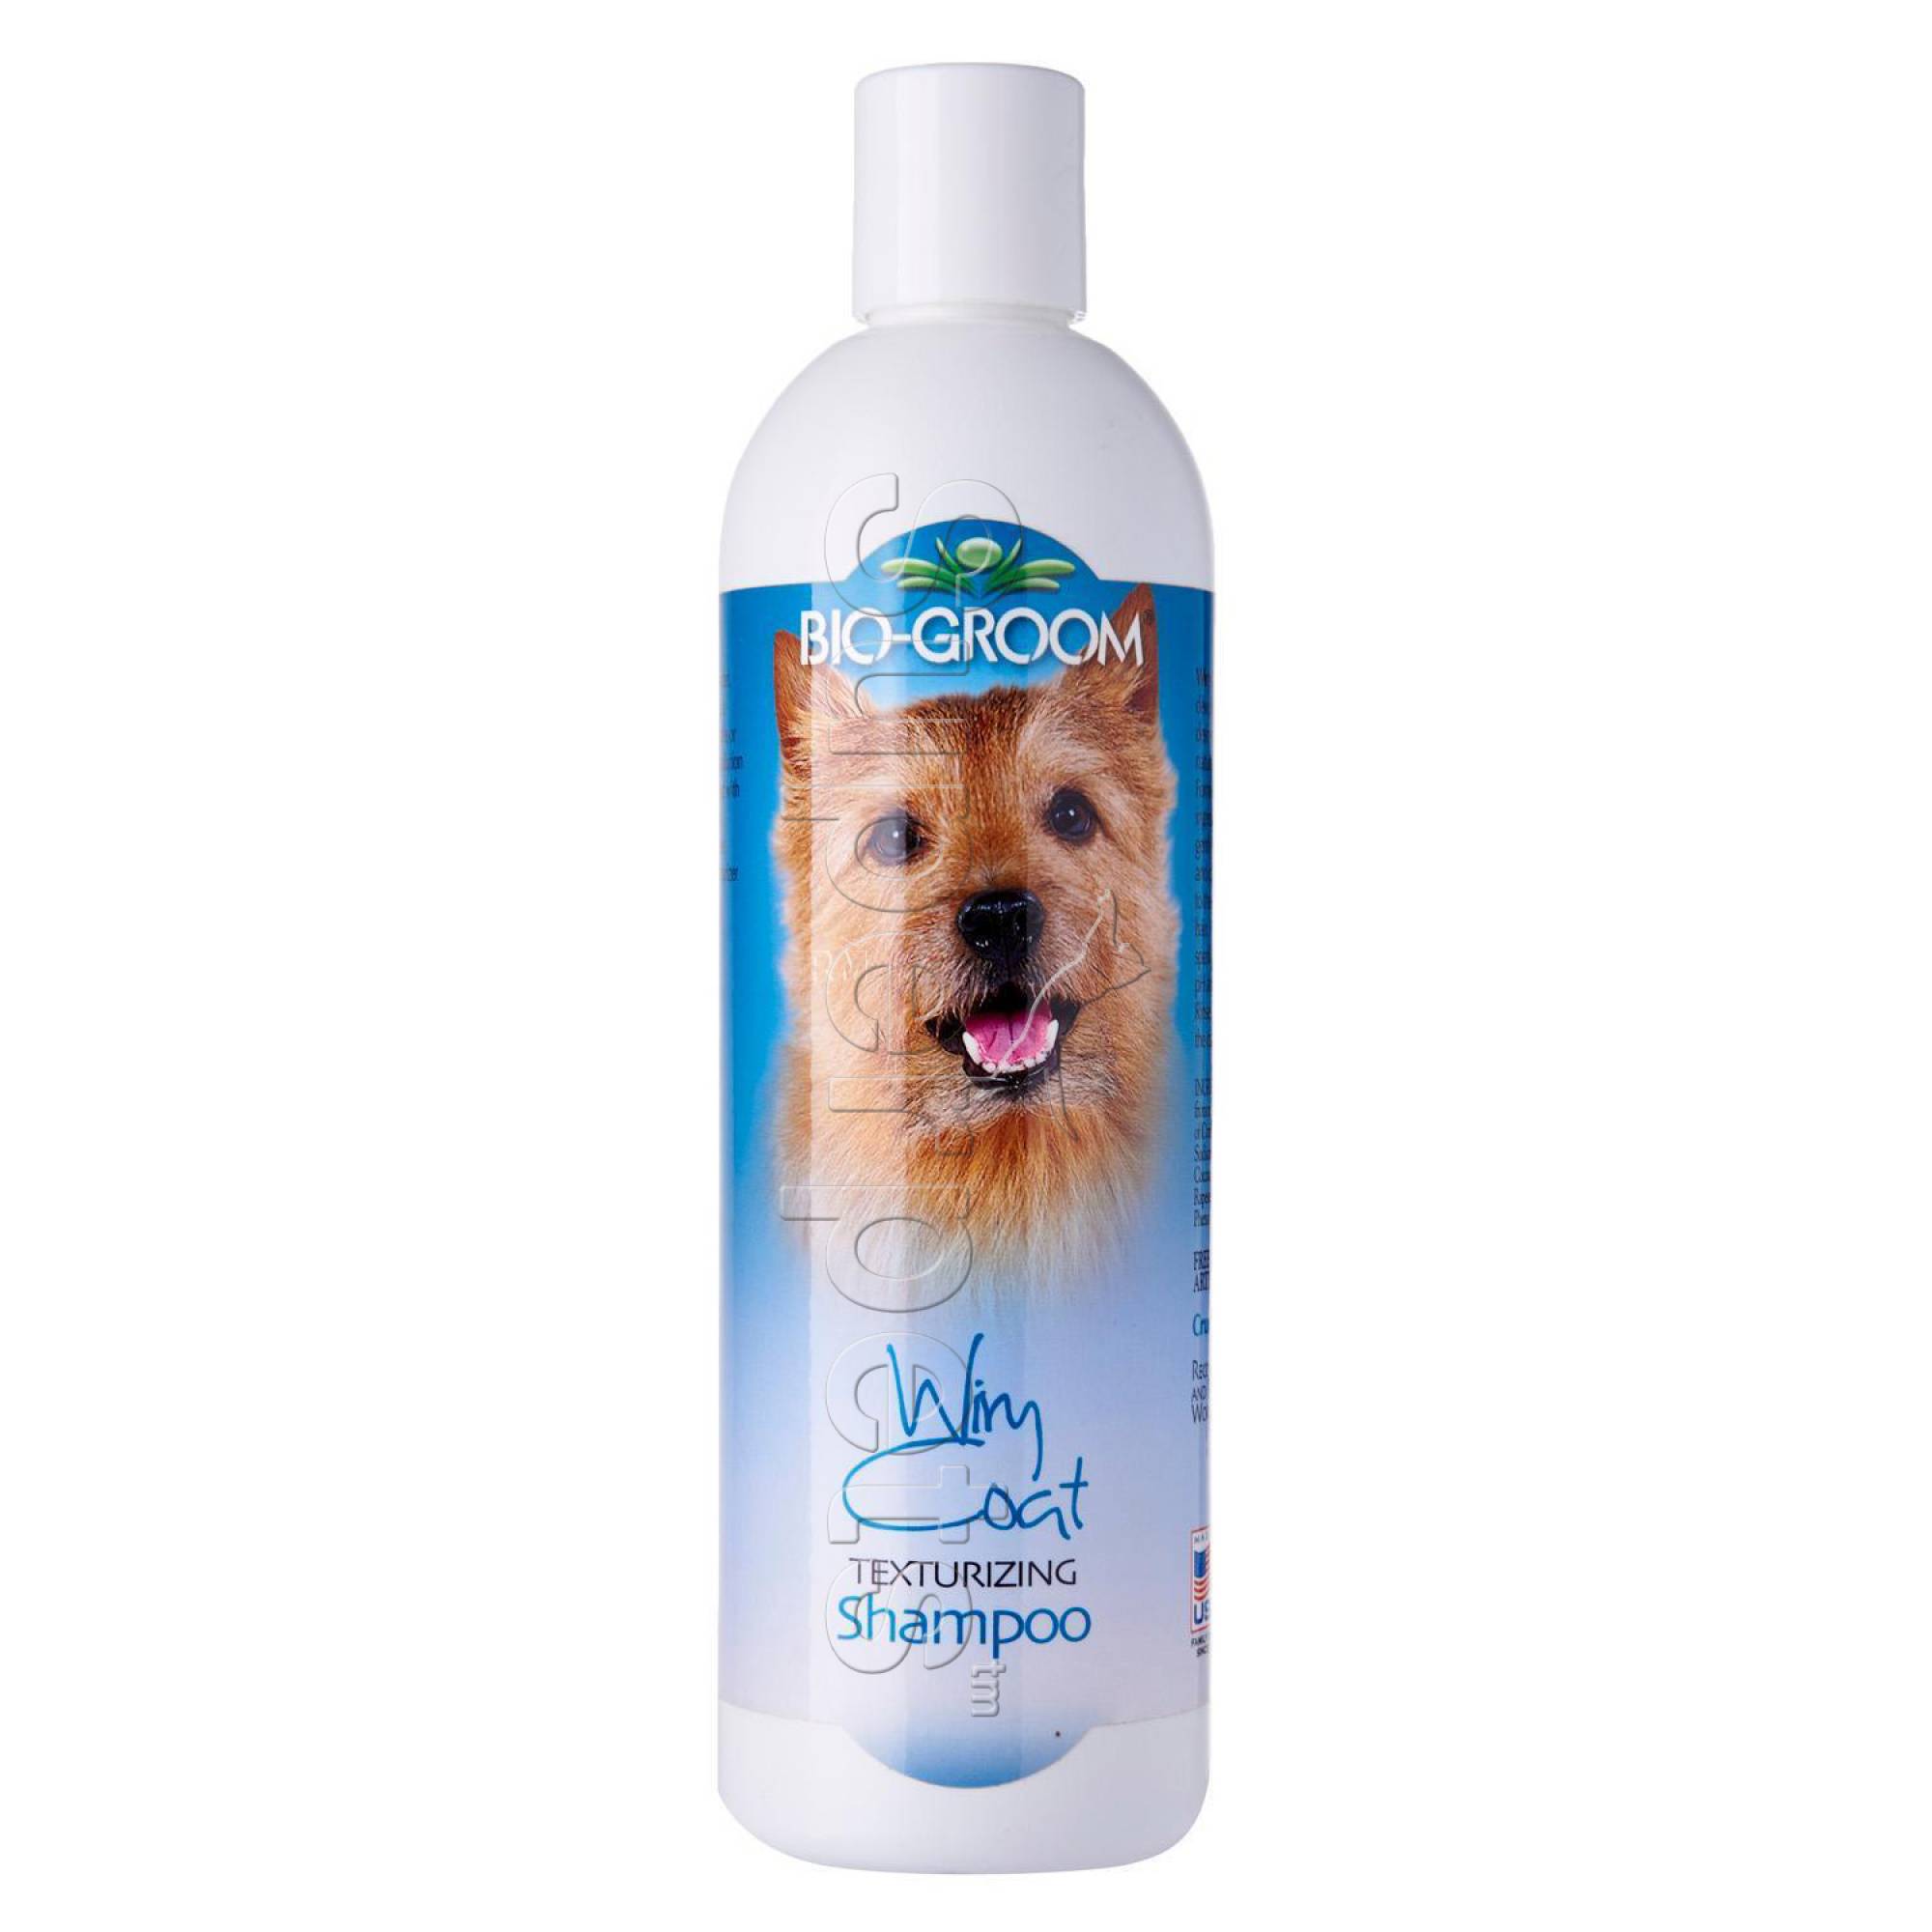 Bio-Groom Wiry Coat Texturizing Shampoo 12oz (355ml)